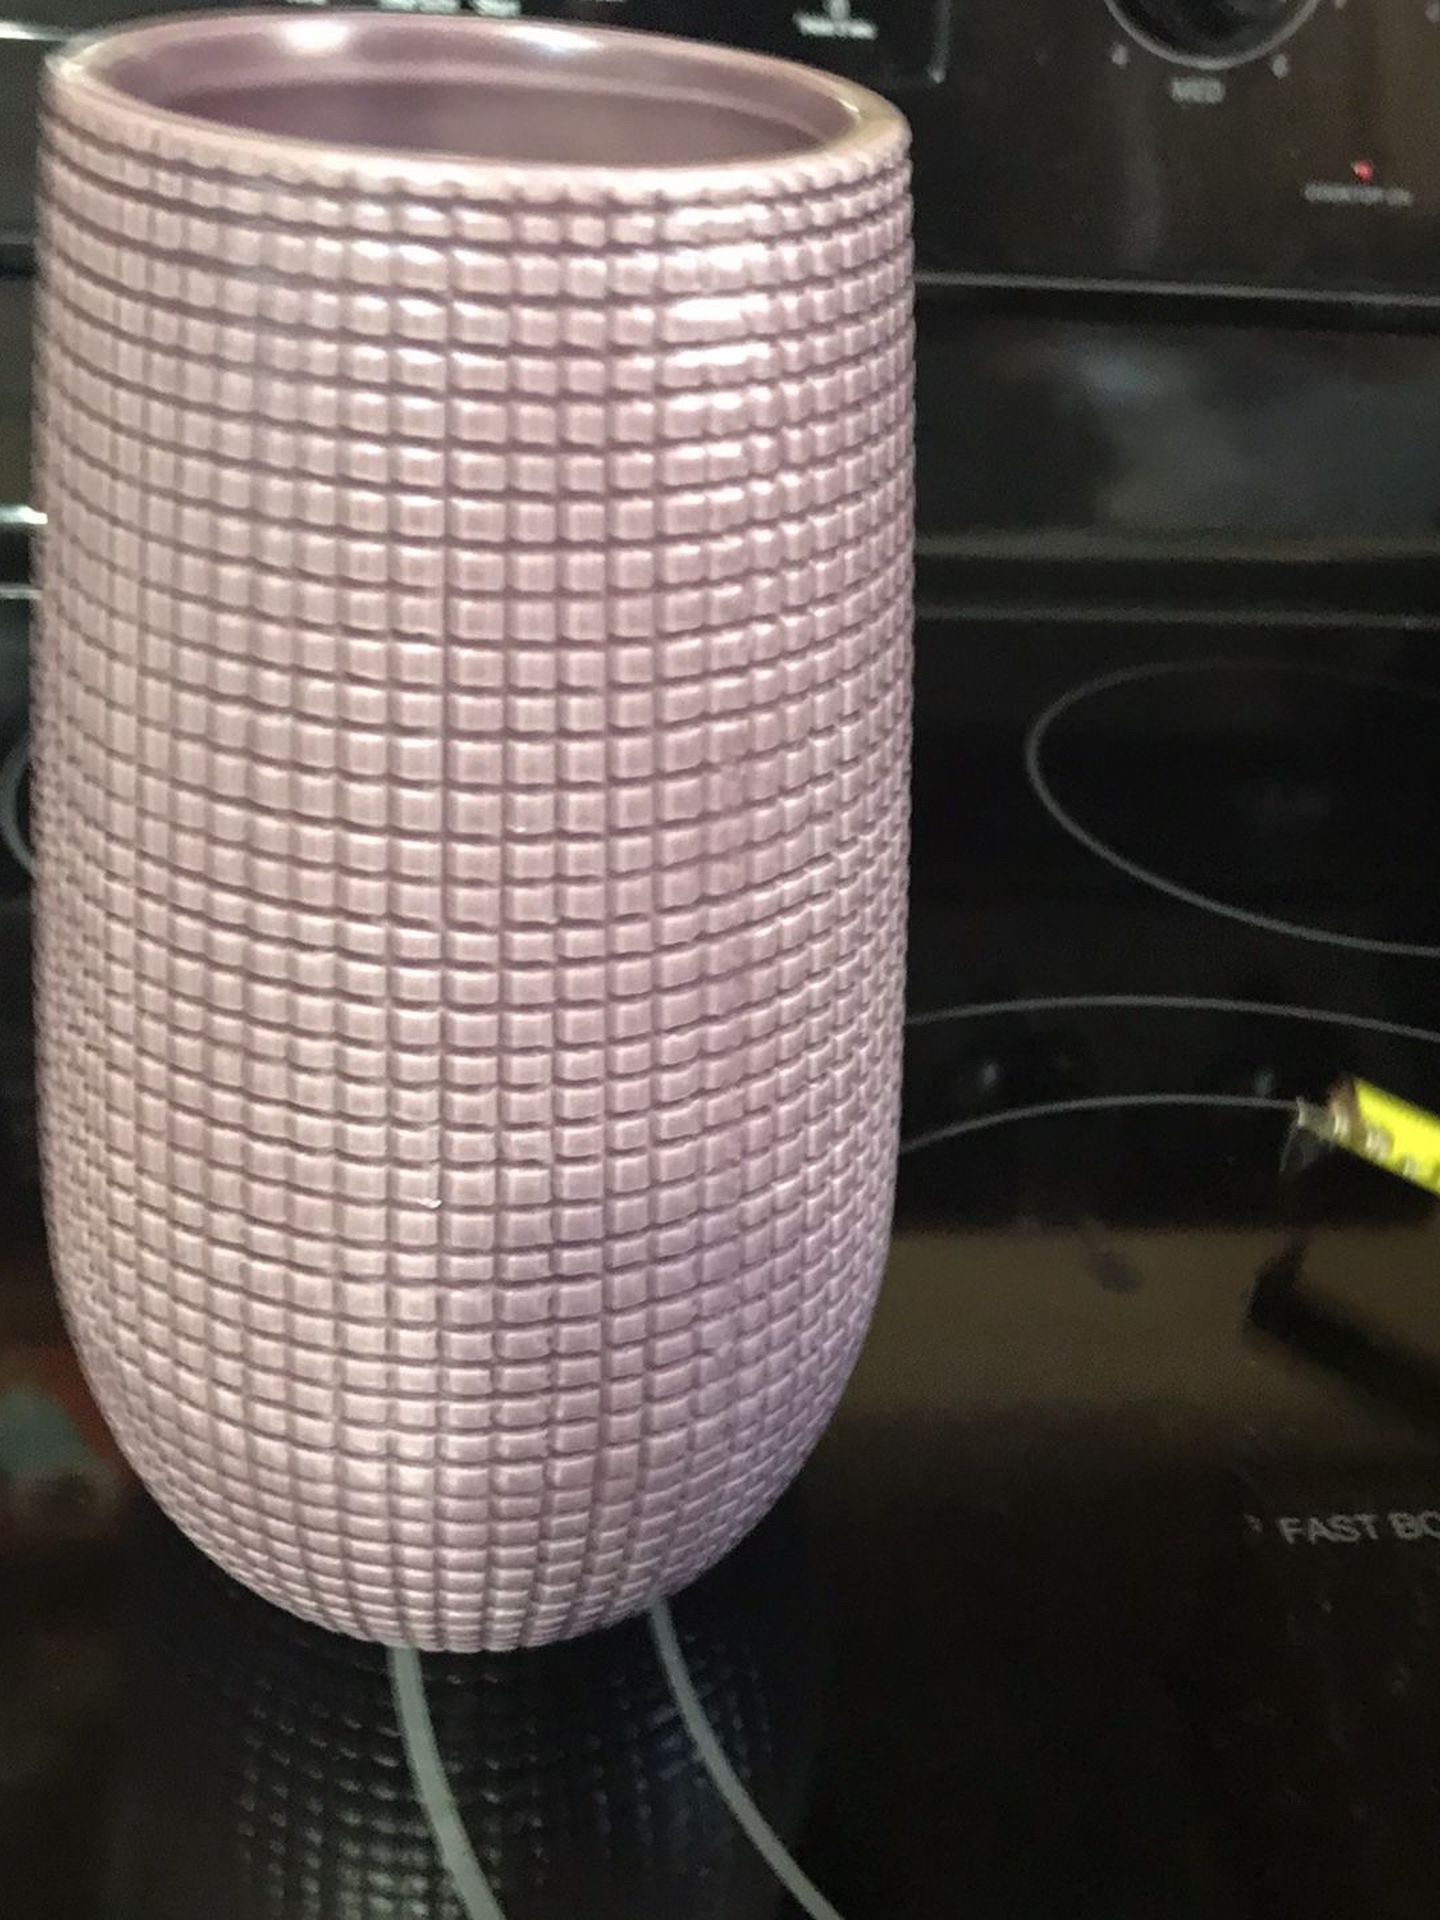 Purple ceramic Vase